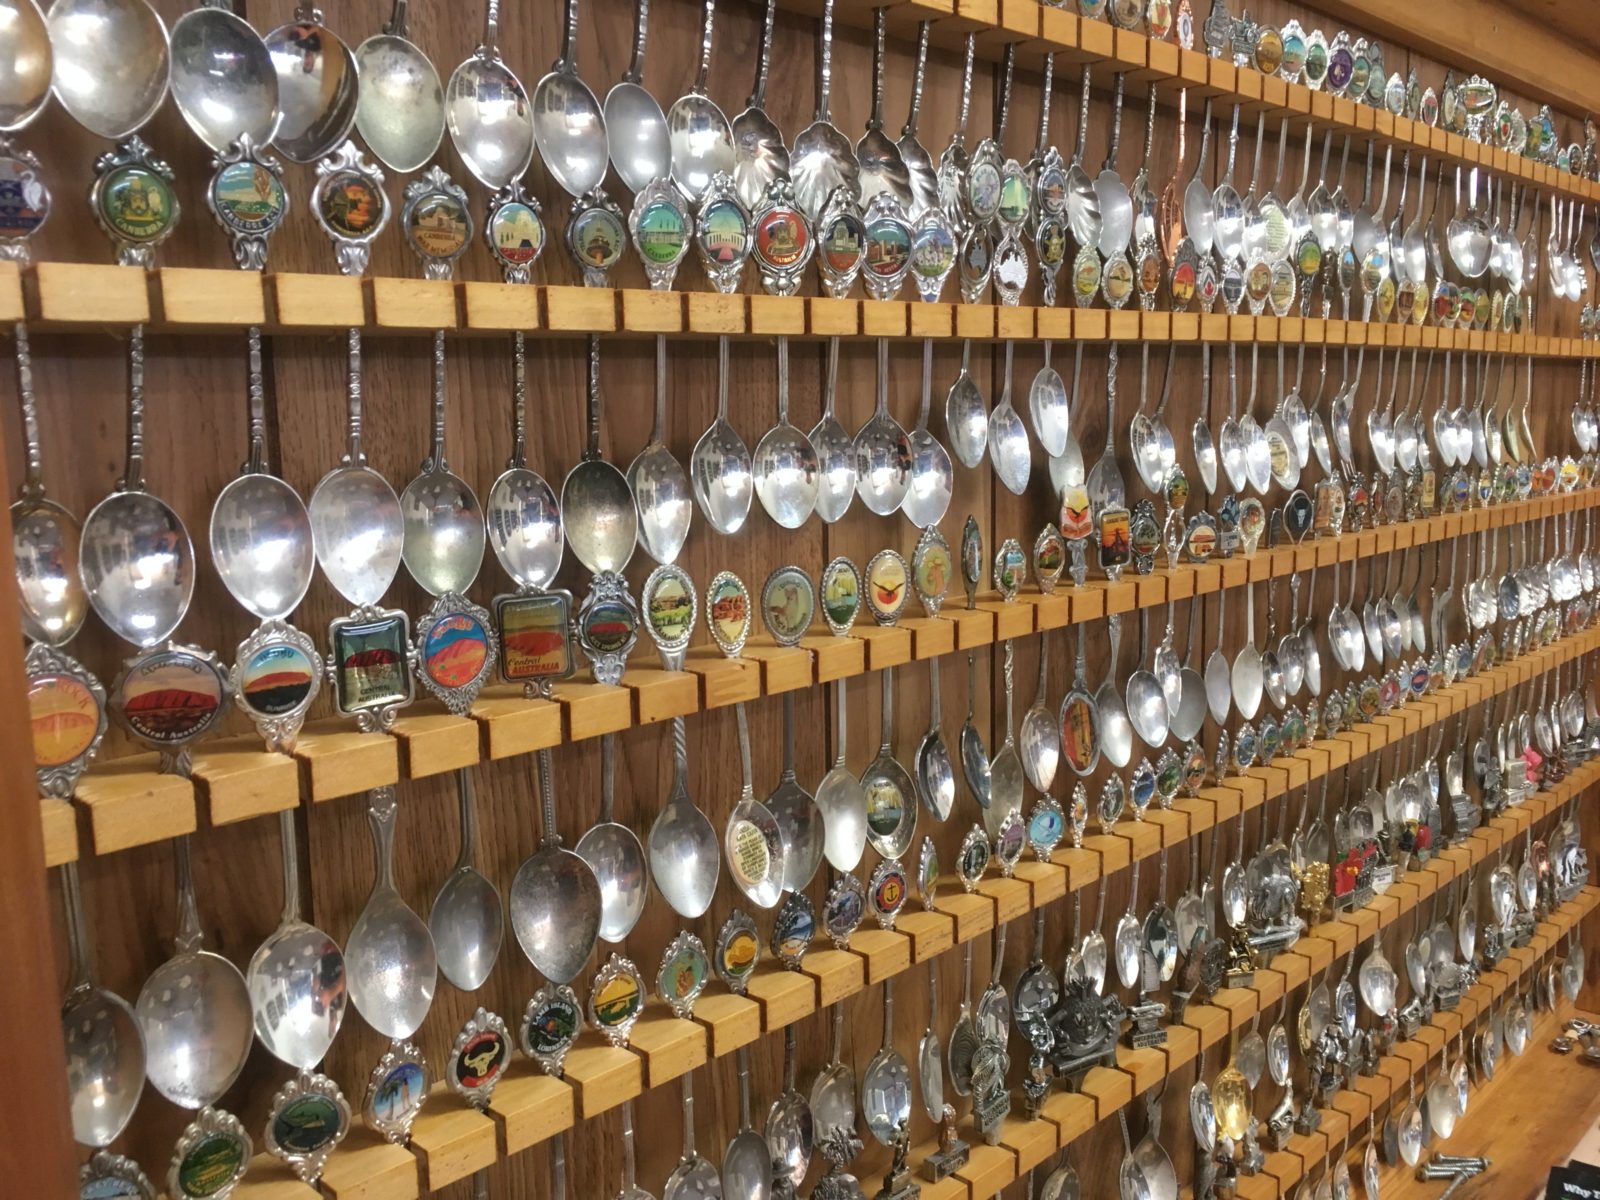 Spoonarama is the Largest Display of Souvenir Teaspoons in Queensland